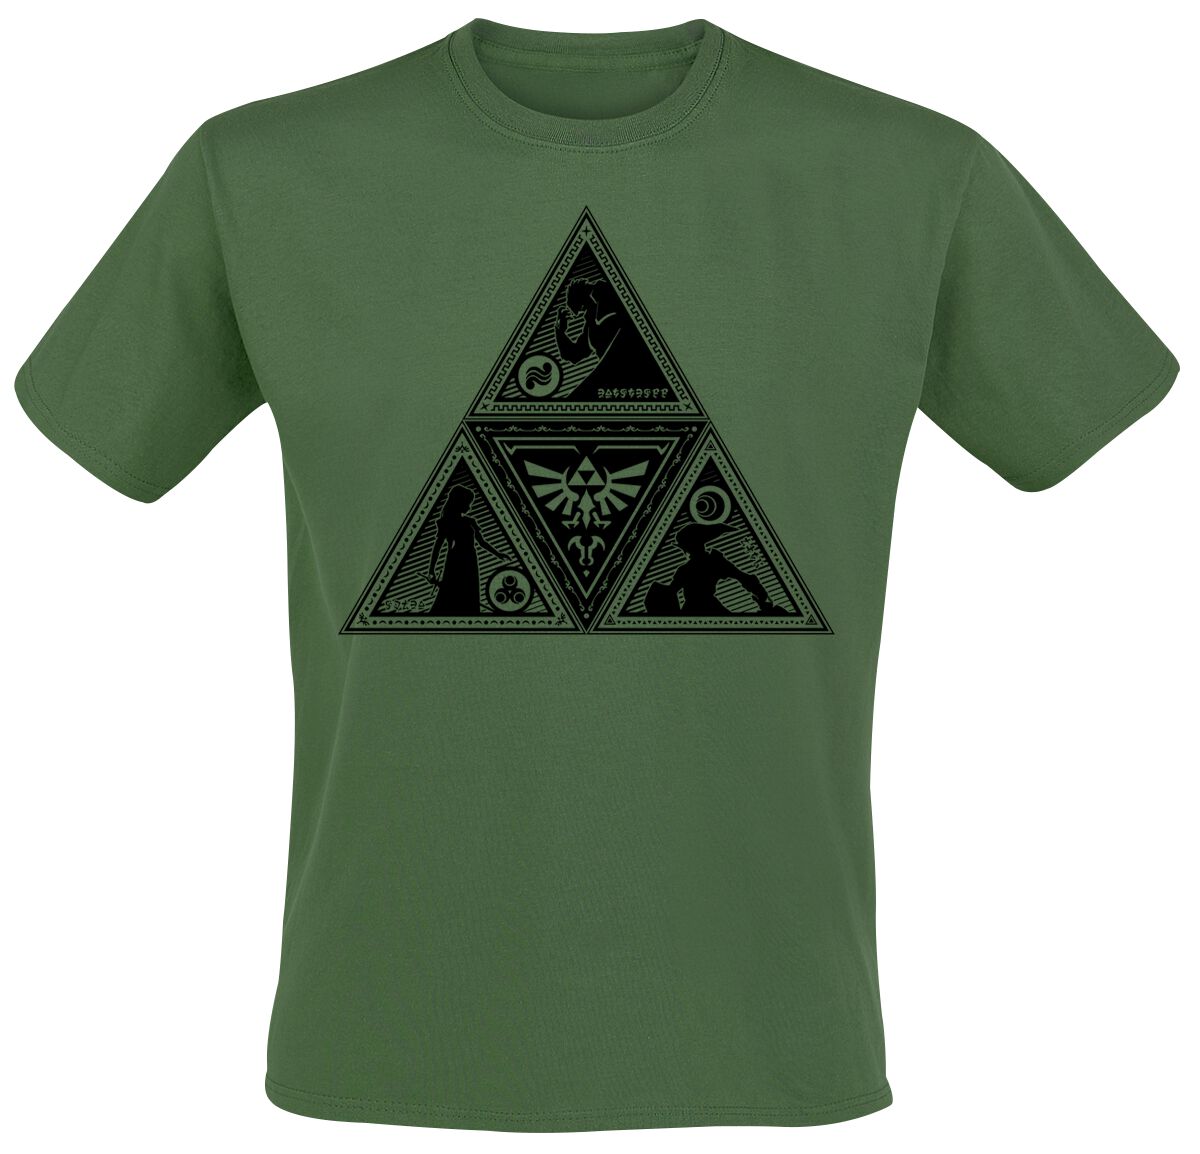 The Legend Of Zelda Triforce T-Shirt dunkelgrün in M